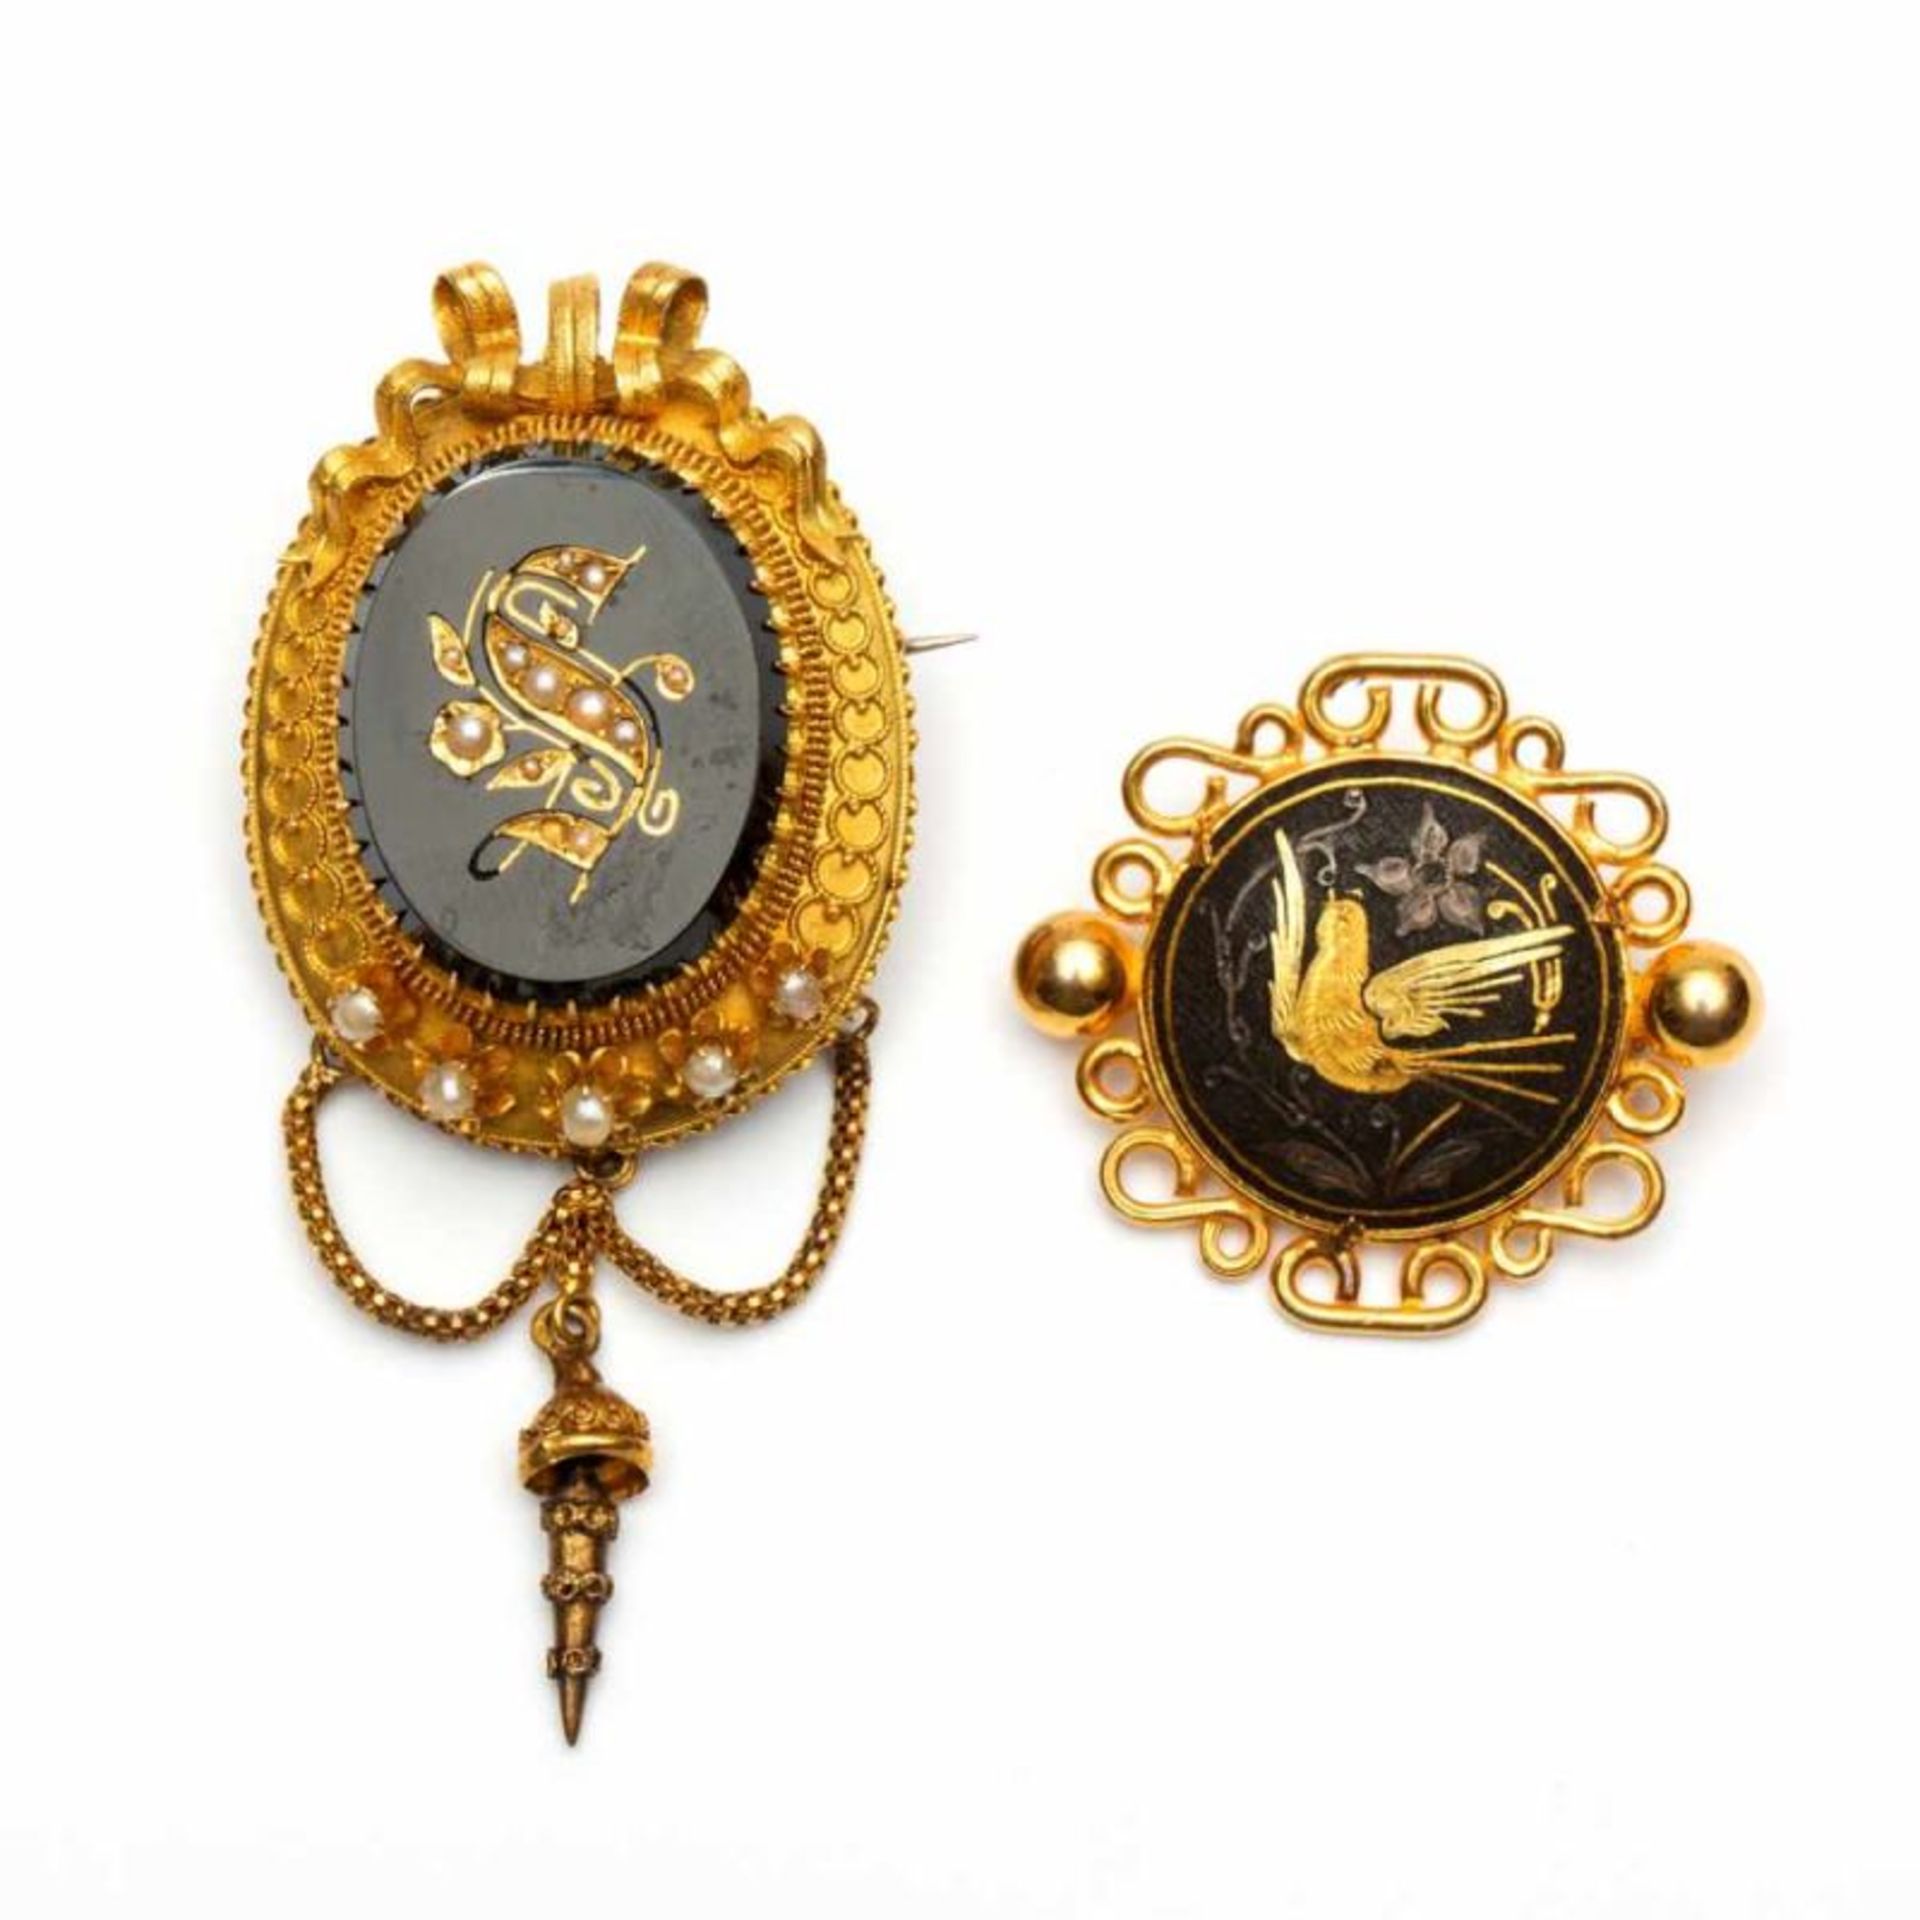 Twee 14krt. gouden broches, 19e eeuw,één ovaal, met in het midden een onyx, waarin een S-vorm, gezet